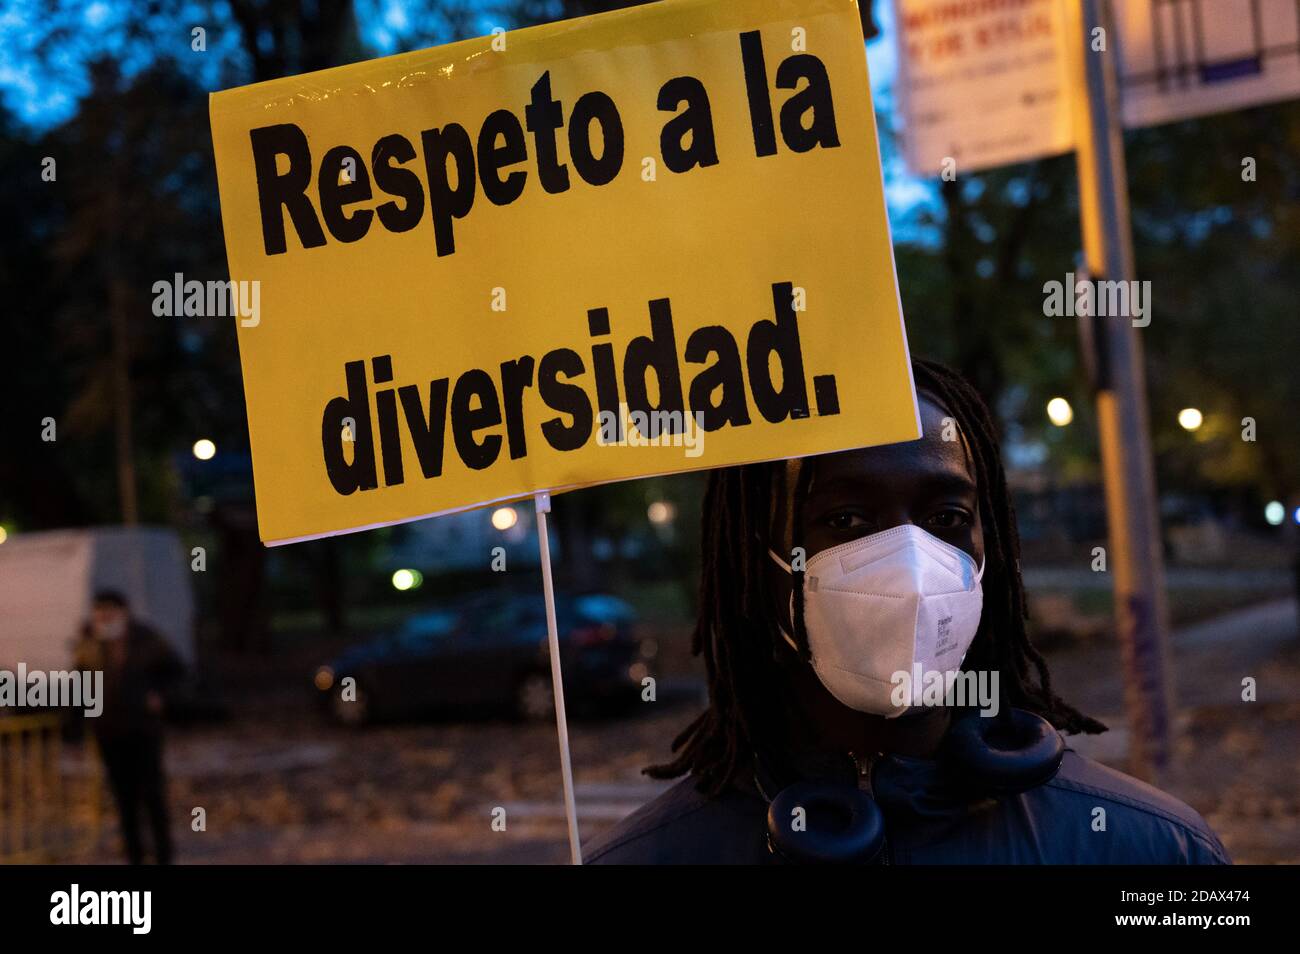 Madrid, España. 15 de noviembre de 2020. Un hombre que lleva un cartel que dice "respetar la diversidad" durante una protesta contra el racismo y la xenofobia. Crédito: Marcos del Mazo/Alamy Live News Foto de stock